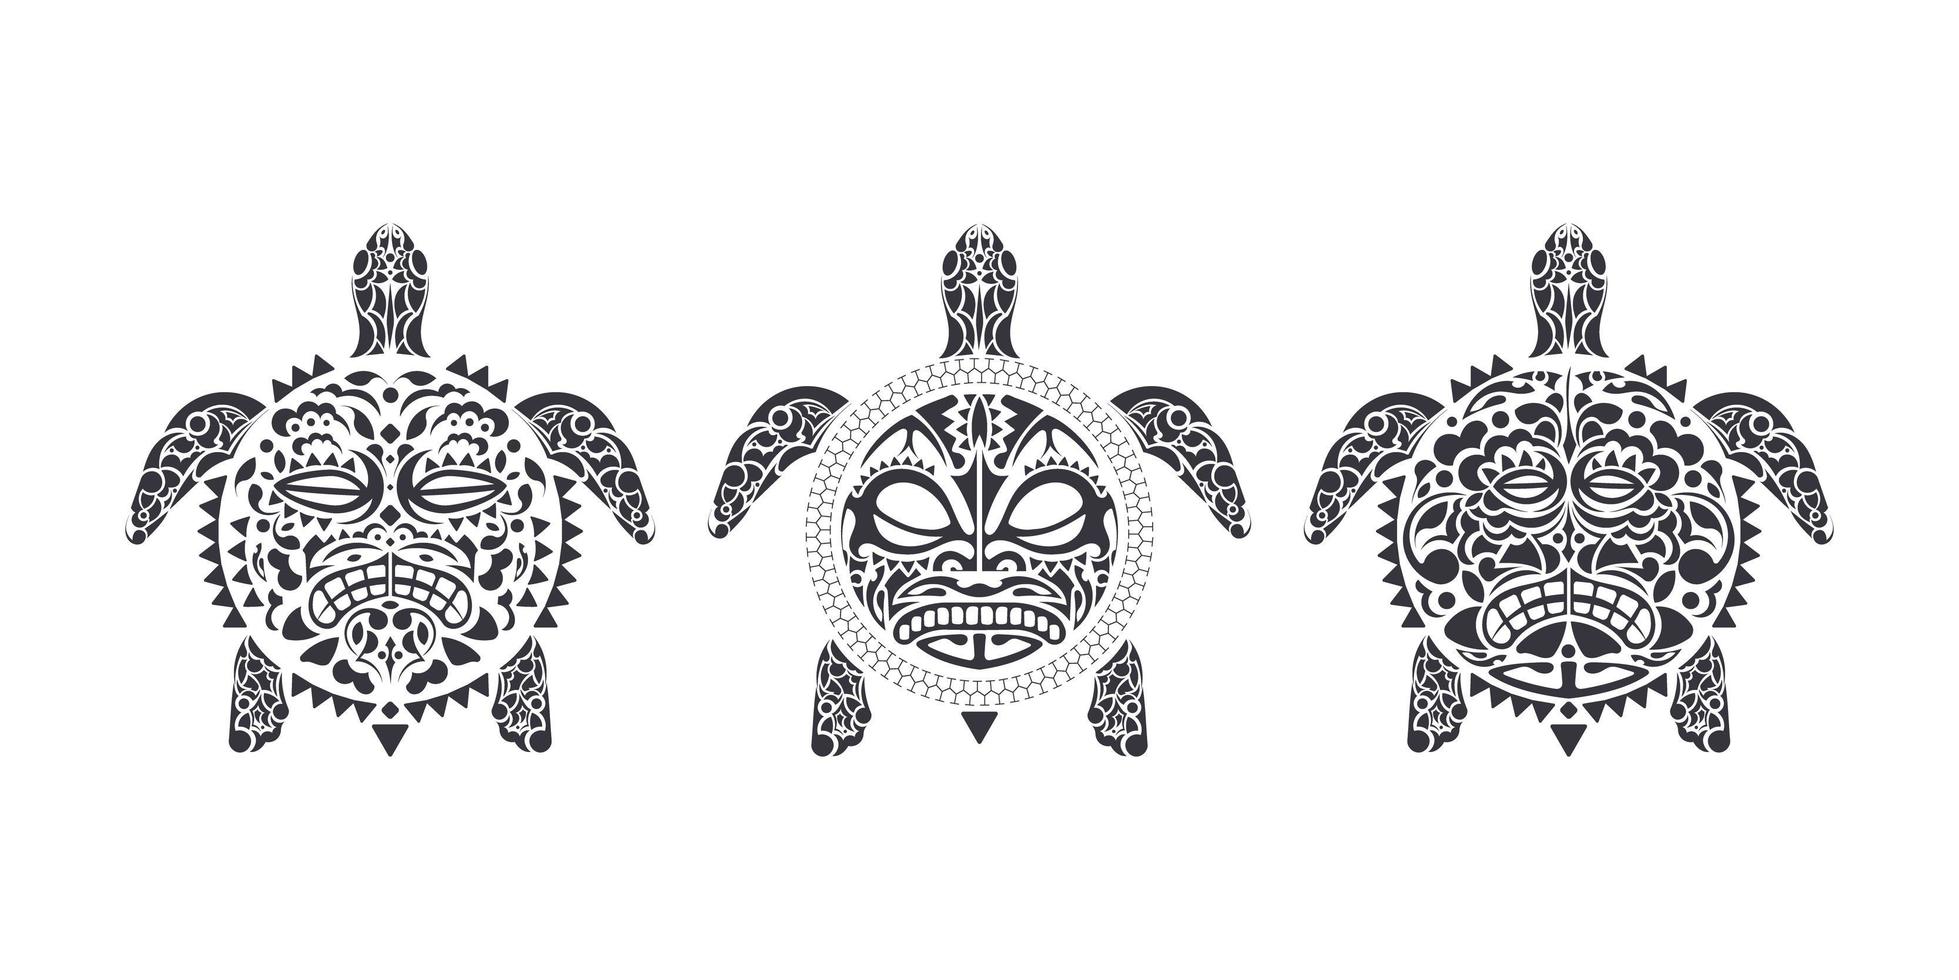 Reihe von Schildkröten im polynesischen Stammes-Tätowierungsstil. Schildkrötenpanzer-Maske. maori und polynesisches kulturmuster. handgefertigt. Vektor-Illustration. vektor